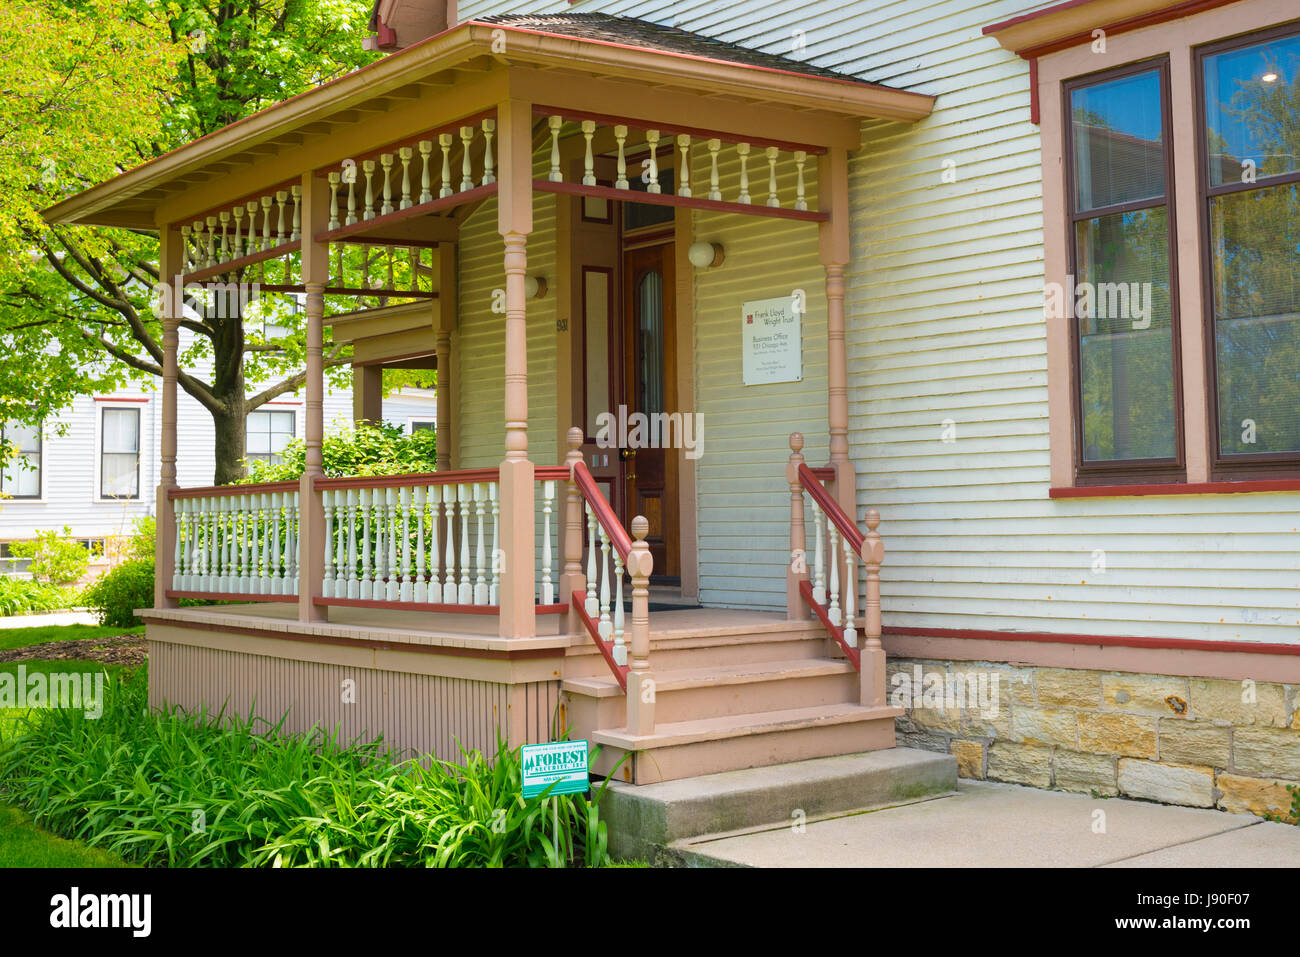 Chicago Illinois Frank Lloyd Wright Oak Park Foundation ufficio uffici portico veranda vecchia casa in legno home scalinate Windows della finestra Foto Stock